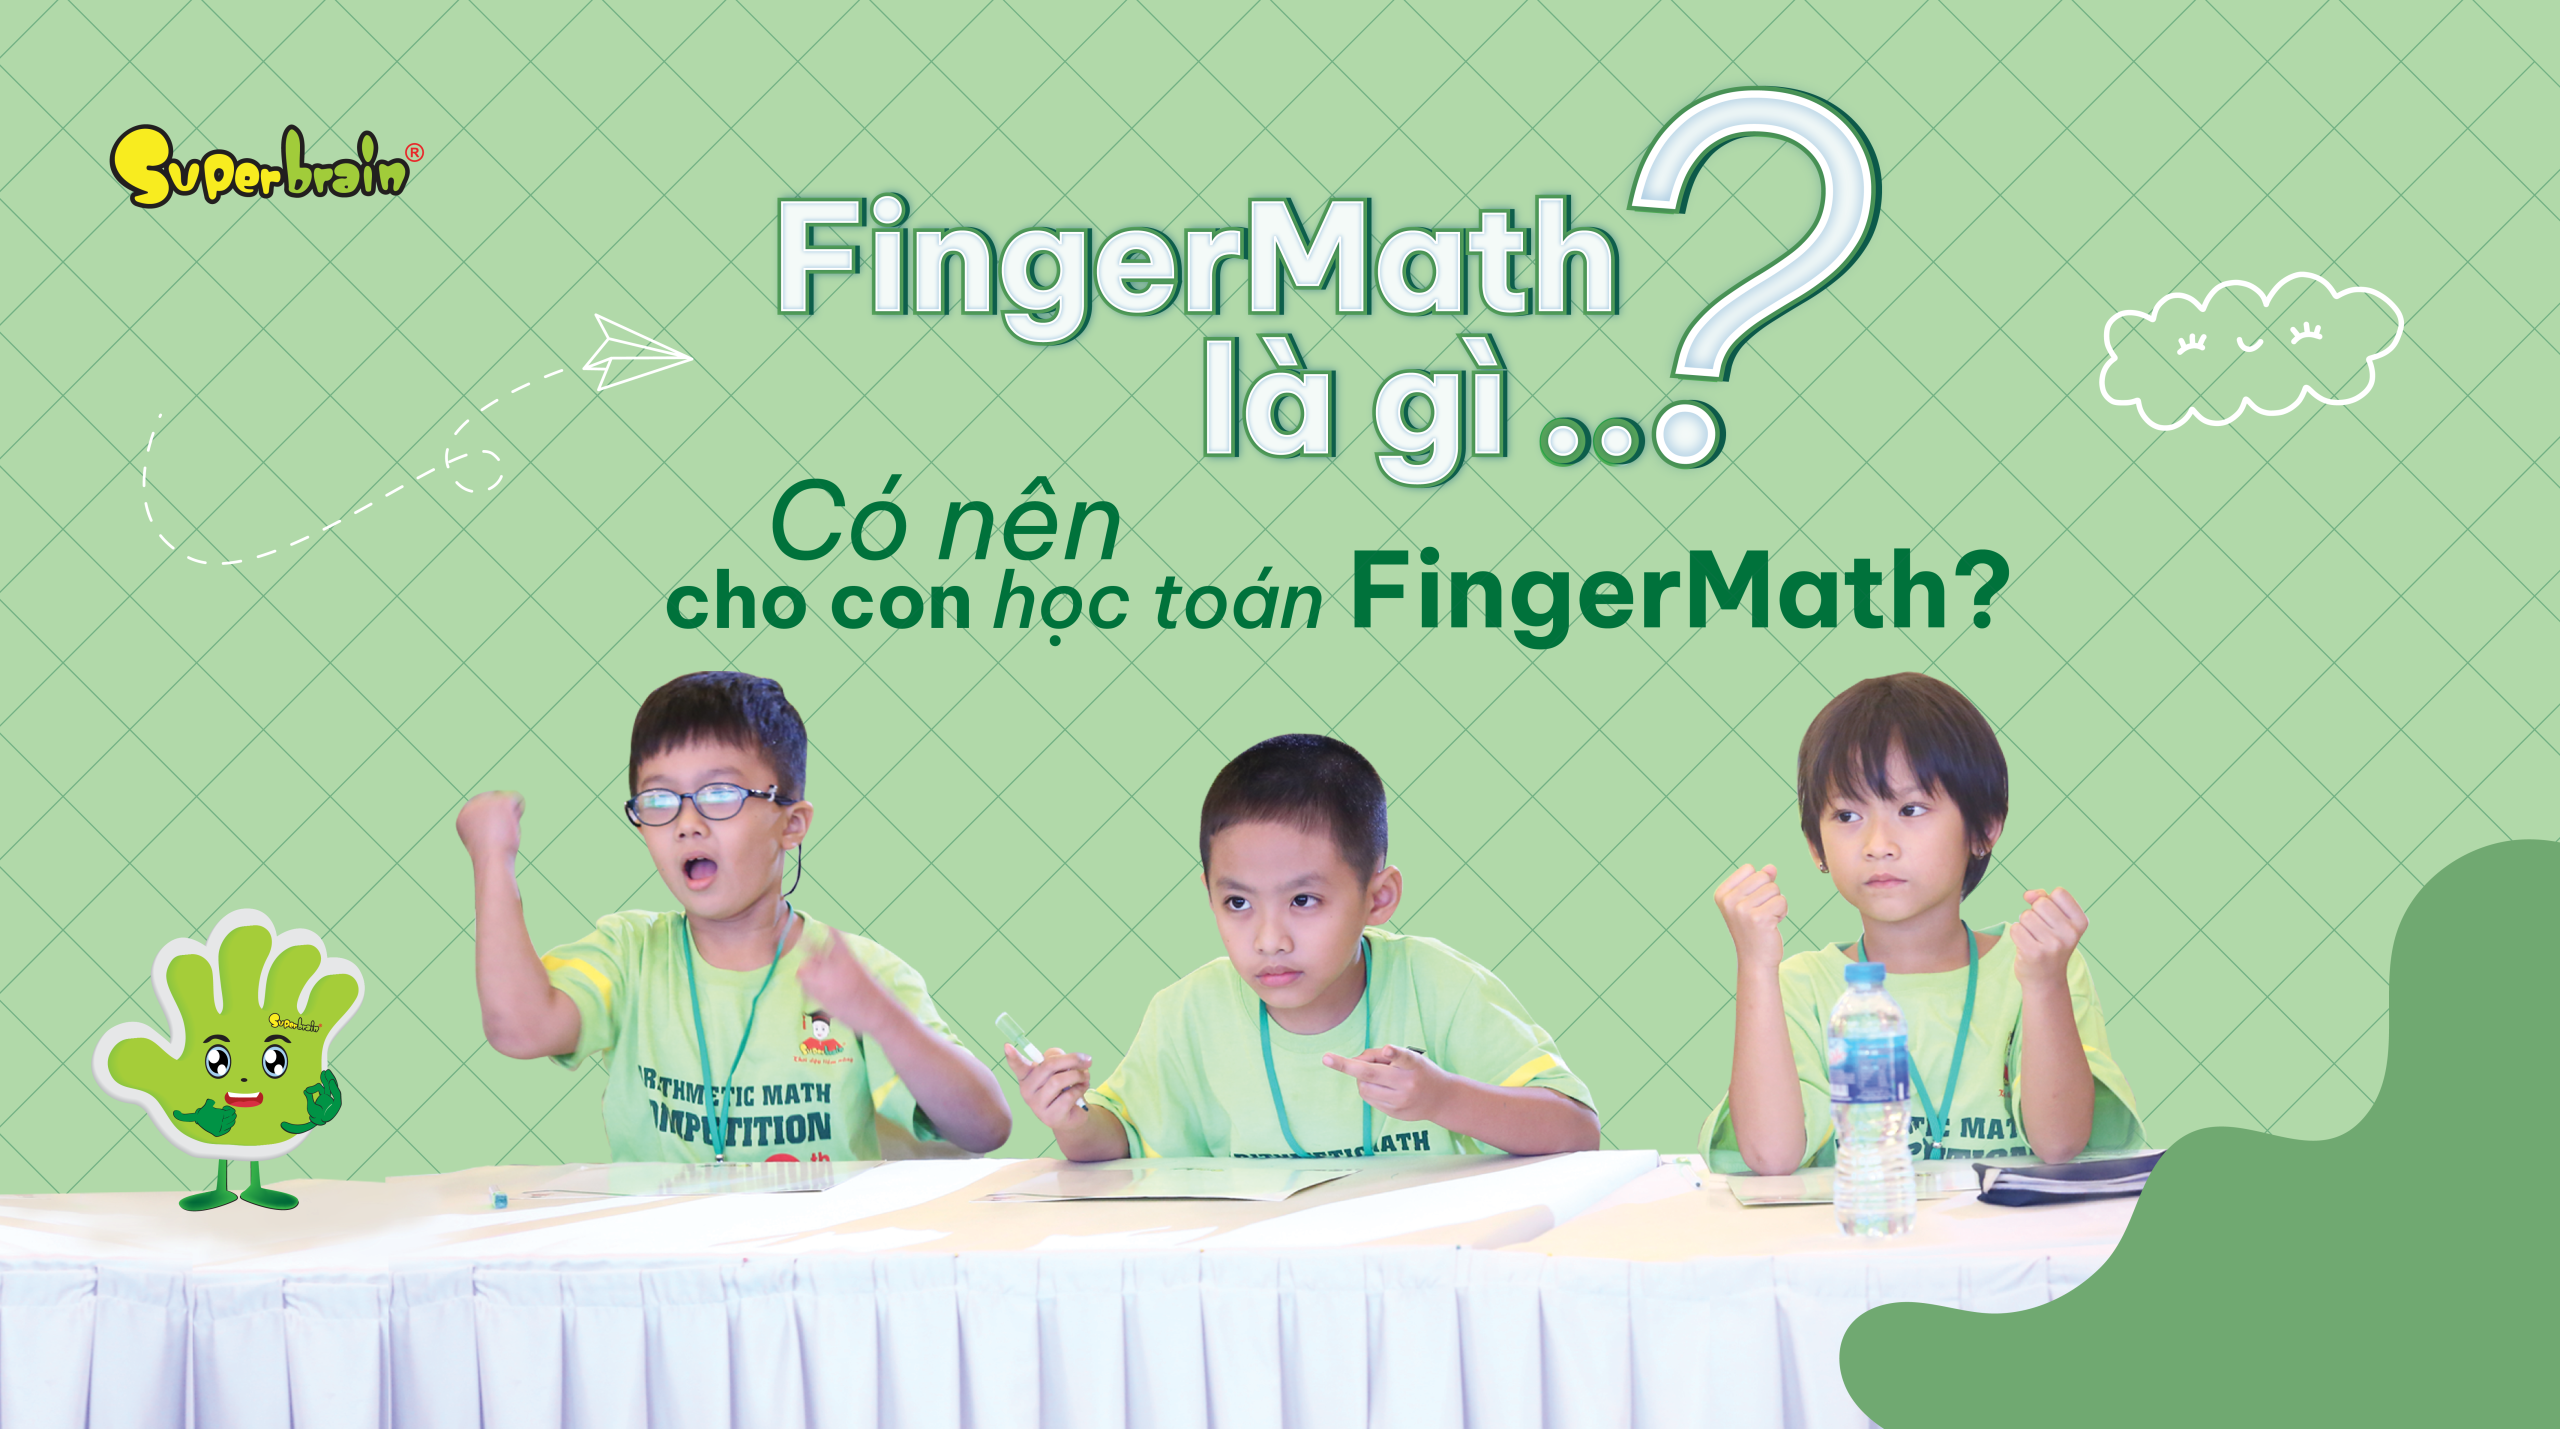 FingerMath là gì? Có nên cho con học toán FingerMath?